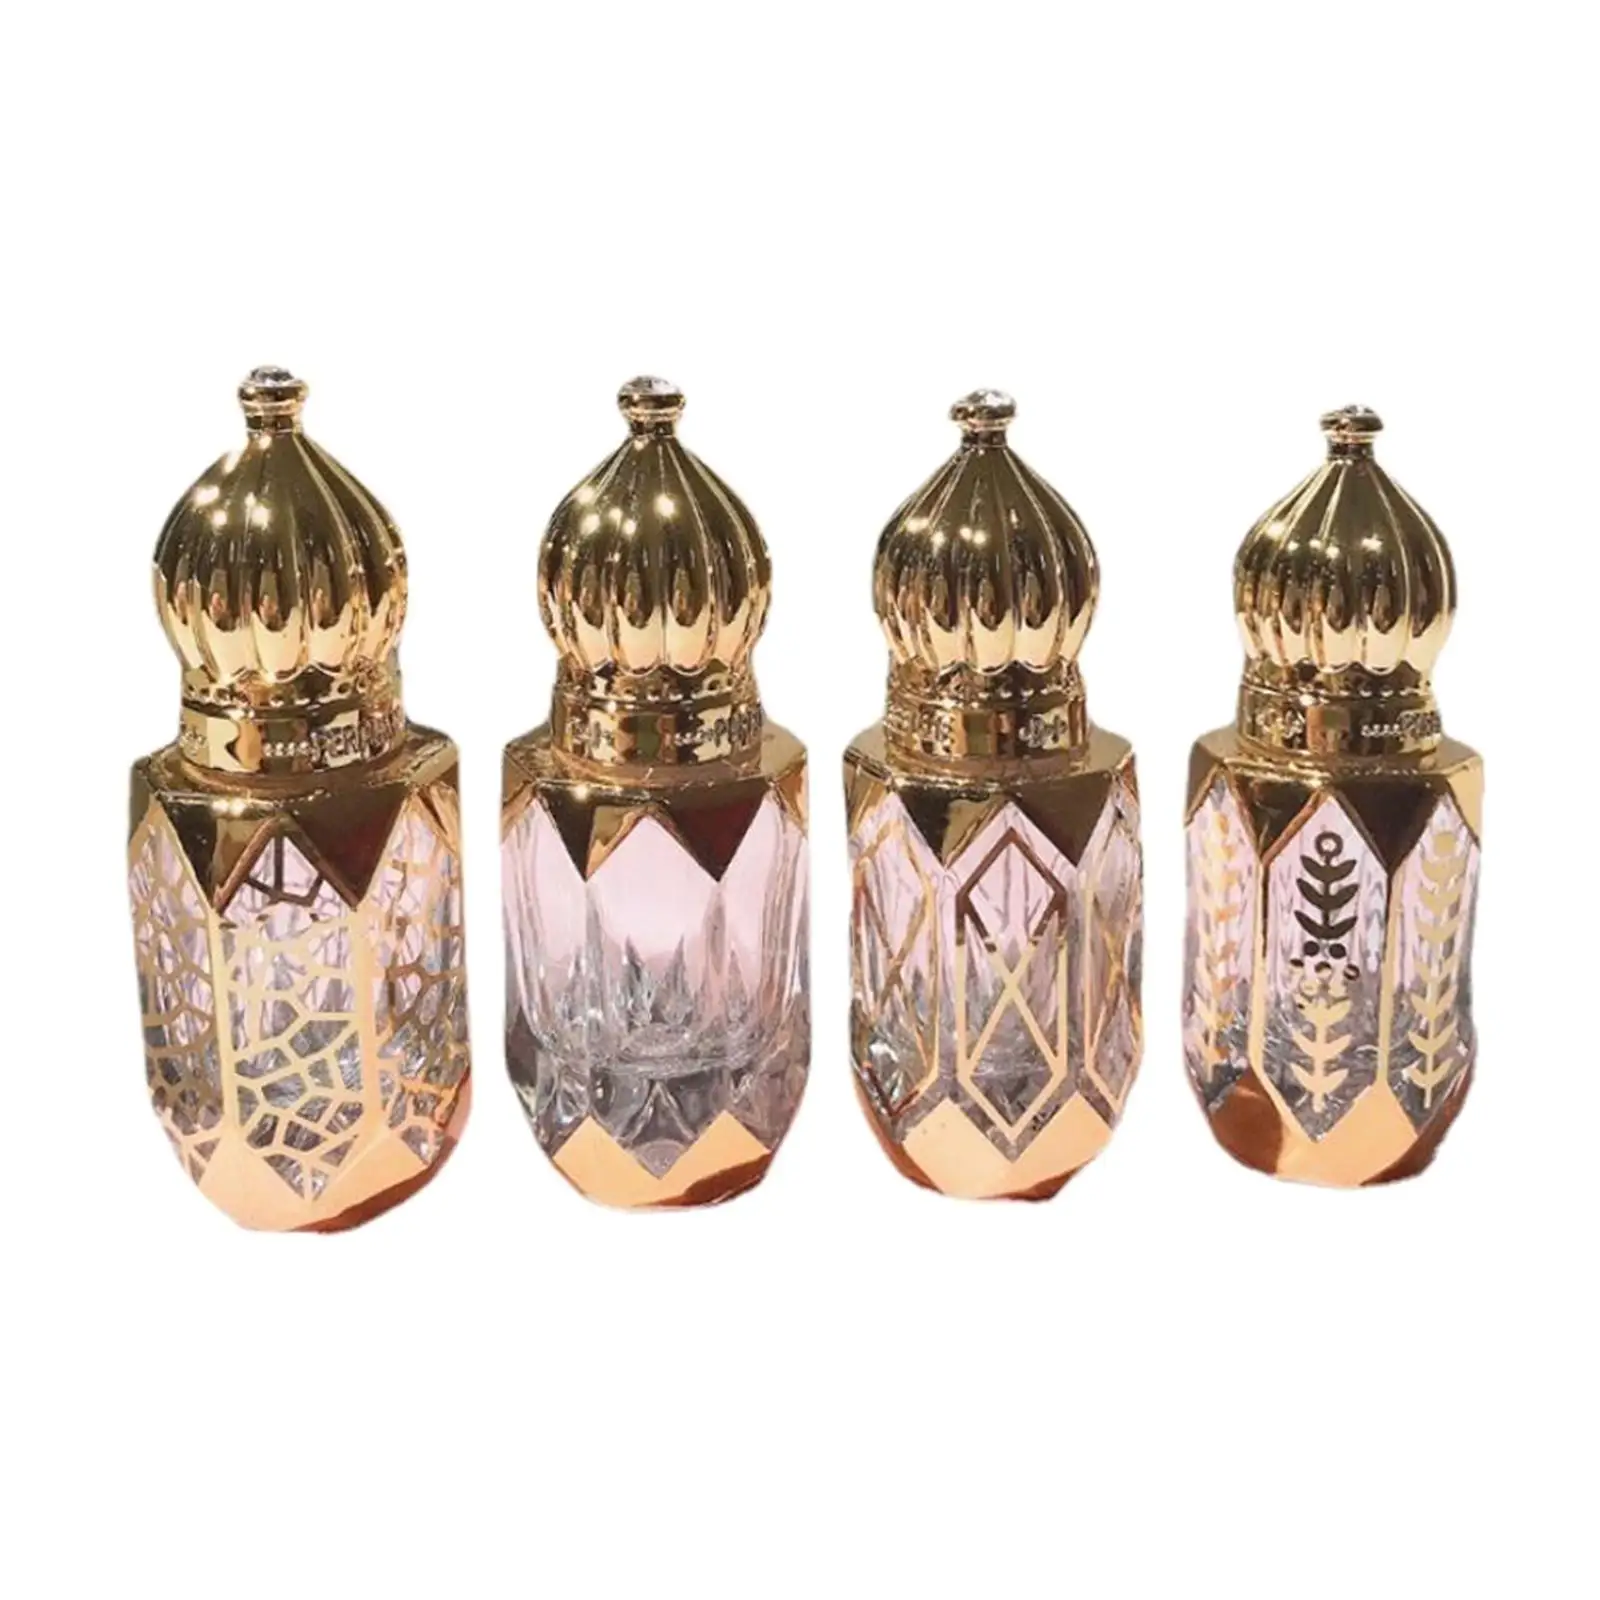 4 Pieces Roll On Bottles Arabic Luxury Mini Roller Ball Portable Golden 6ml Roller Bottles Vial for Fragrance Perfume Travel